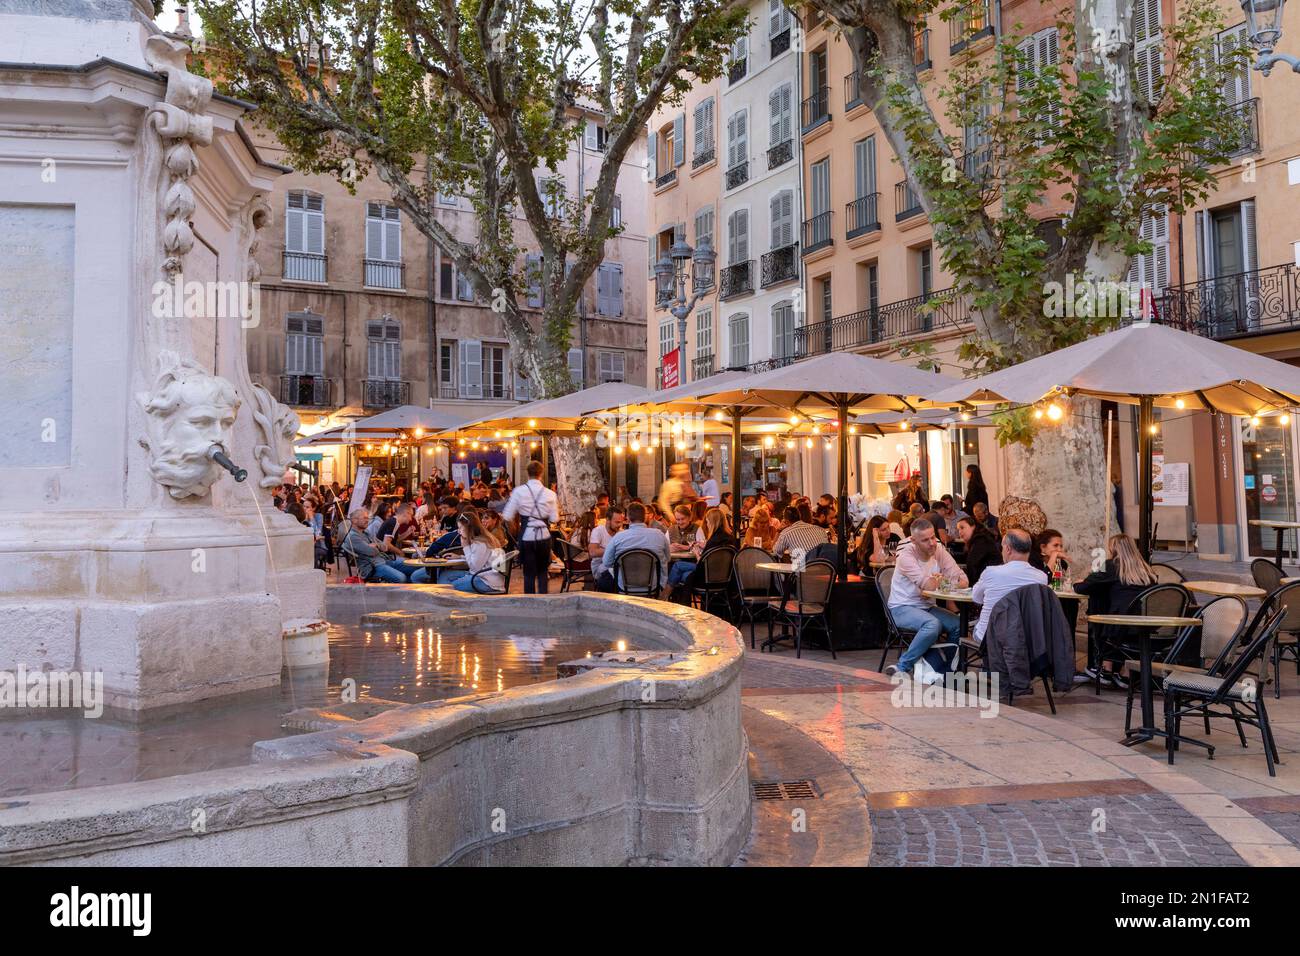 Essen und Trinken in einem Café im Freien, Aix-en-Provence, Bouches-du-Rhone, Provence-Alpes-Cote d'Azur, Frankreich, Westeuropa Stockfoto